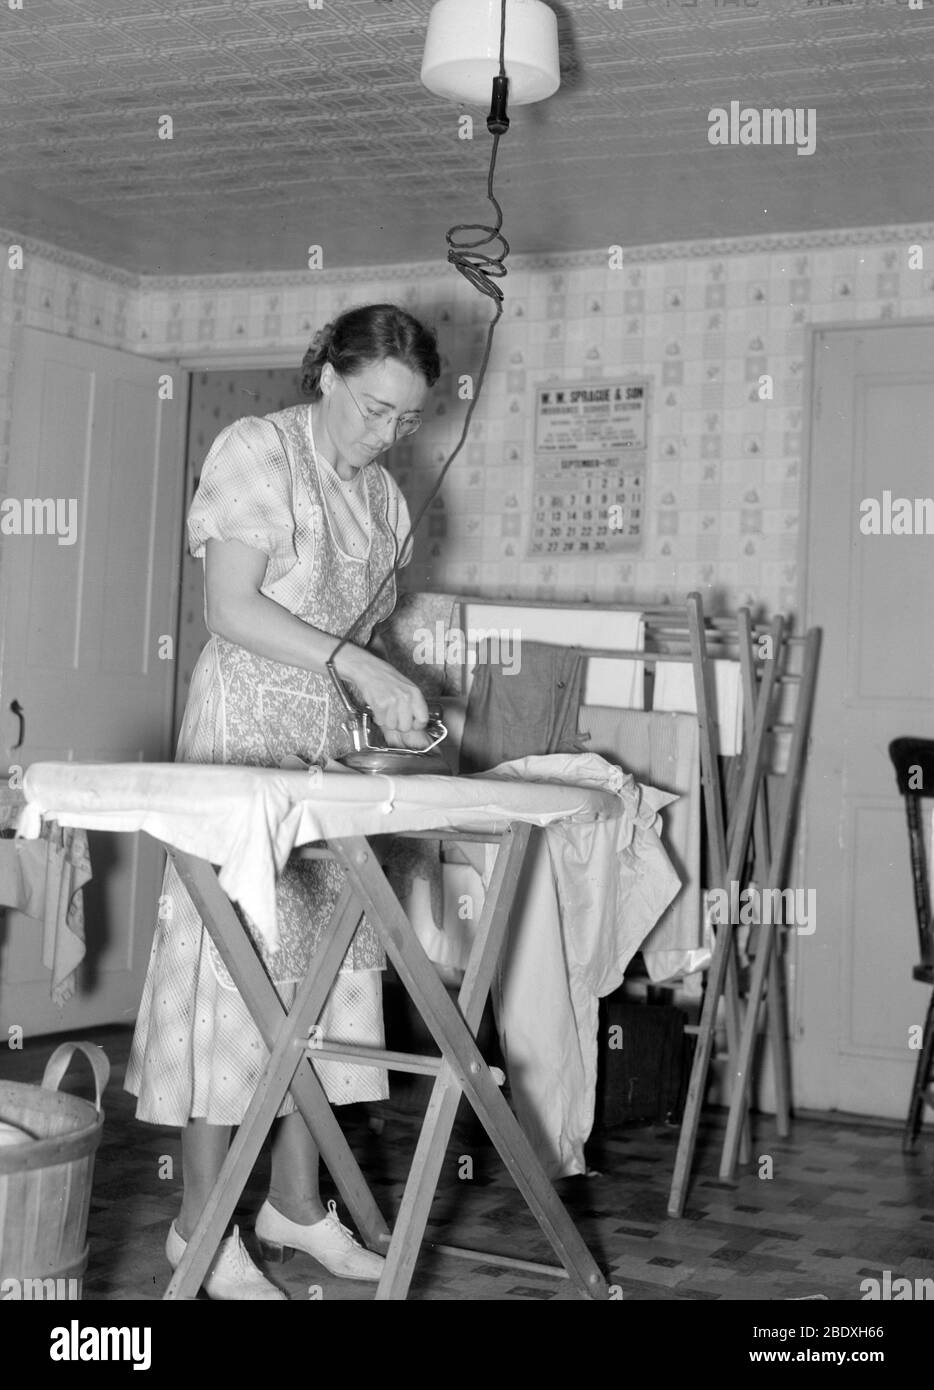 Housemaid Ironing, 1937 Stock Photo